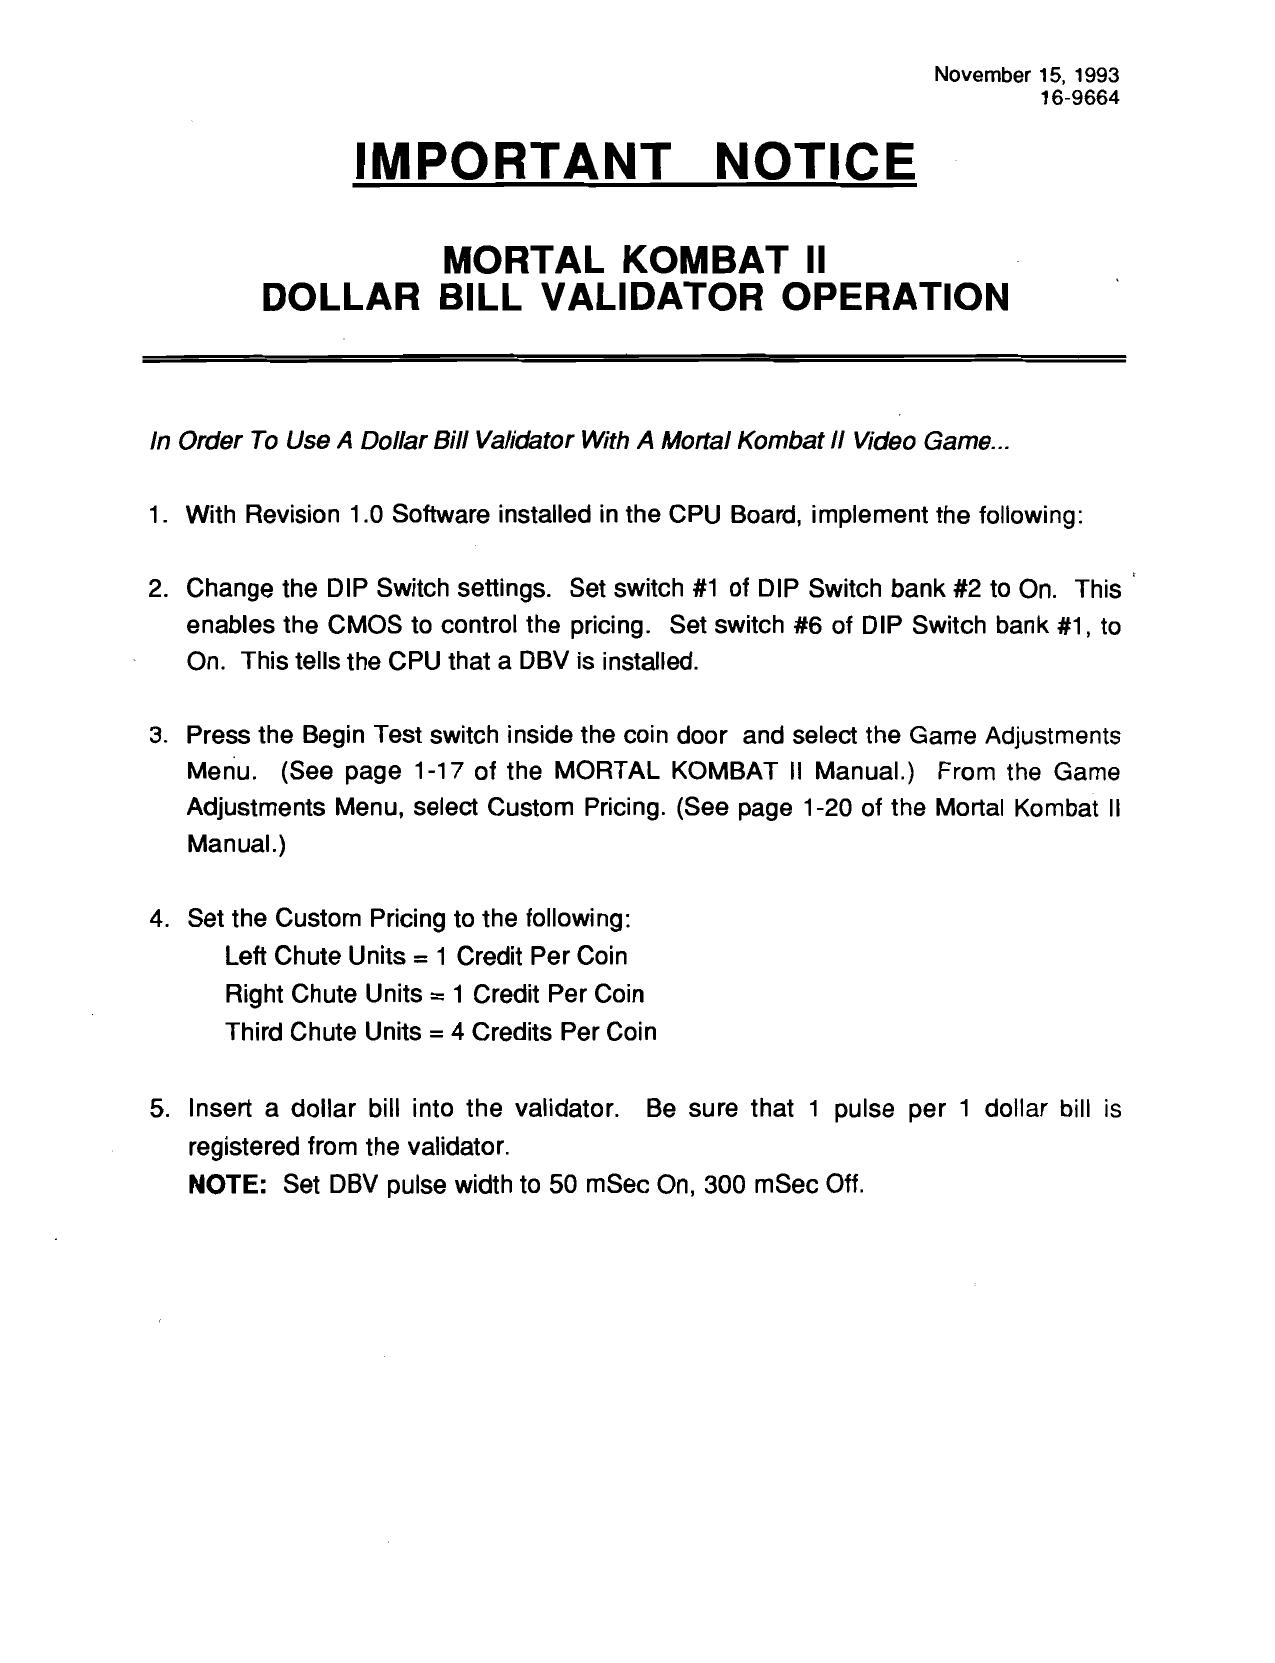 Mortal Kombat 2 (Dollar Bill Validtor Operation (16-9664 Nov 15 1997)